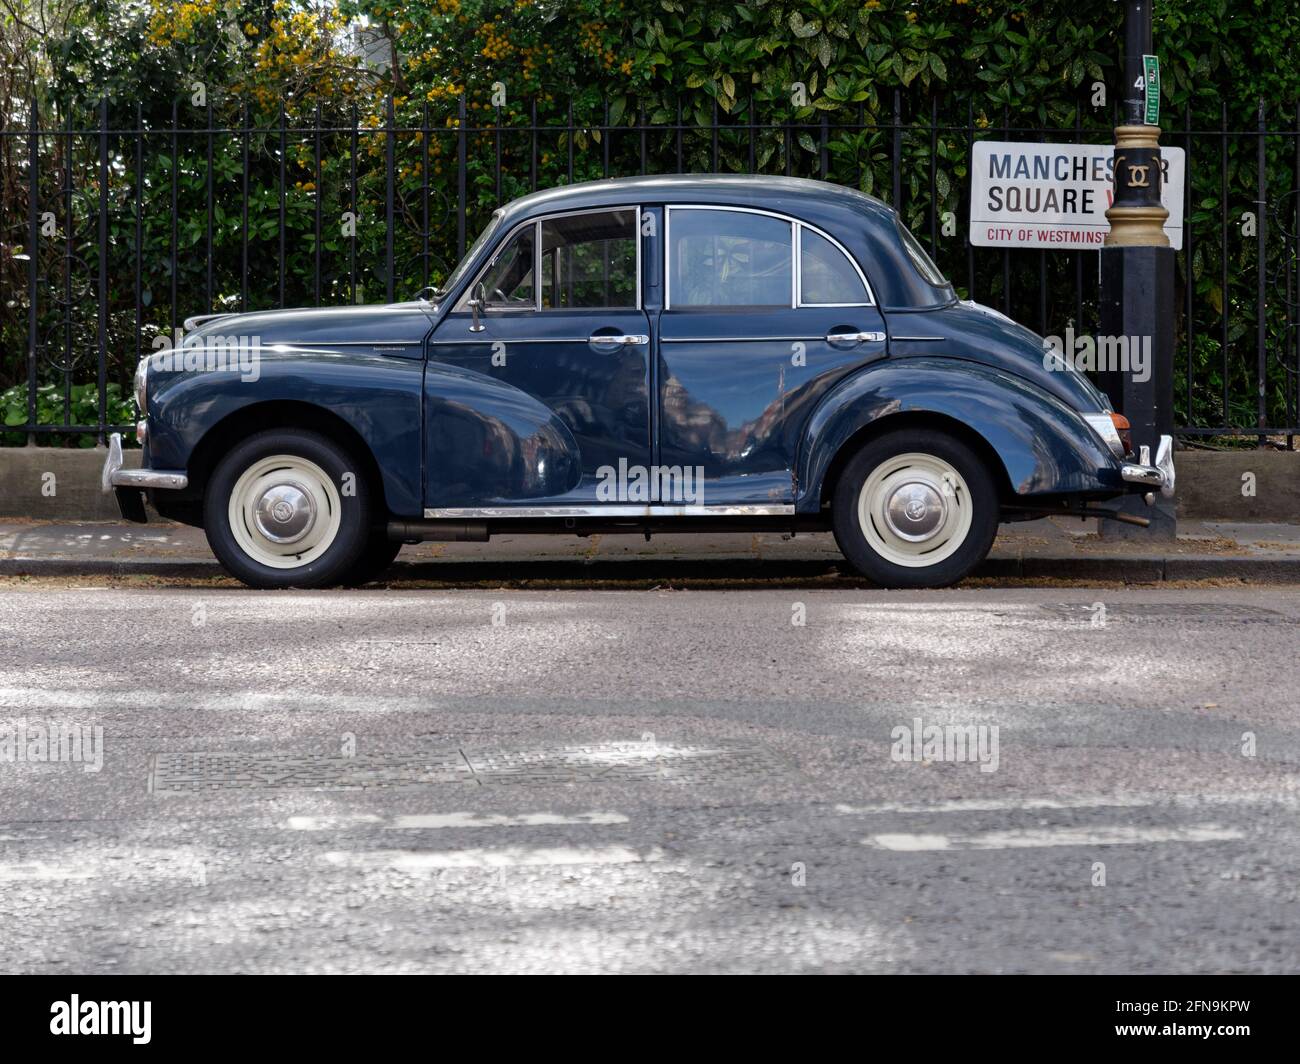 Londra, Grande Londra, Inghilterra - Maggio 11 2021: Auto d'epoca carina parcheggiata a Manchester Square. Foto Stock